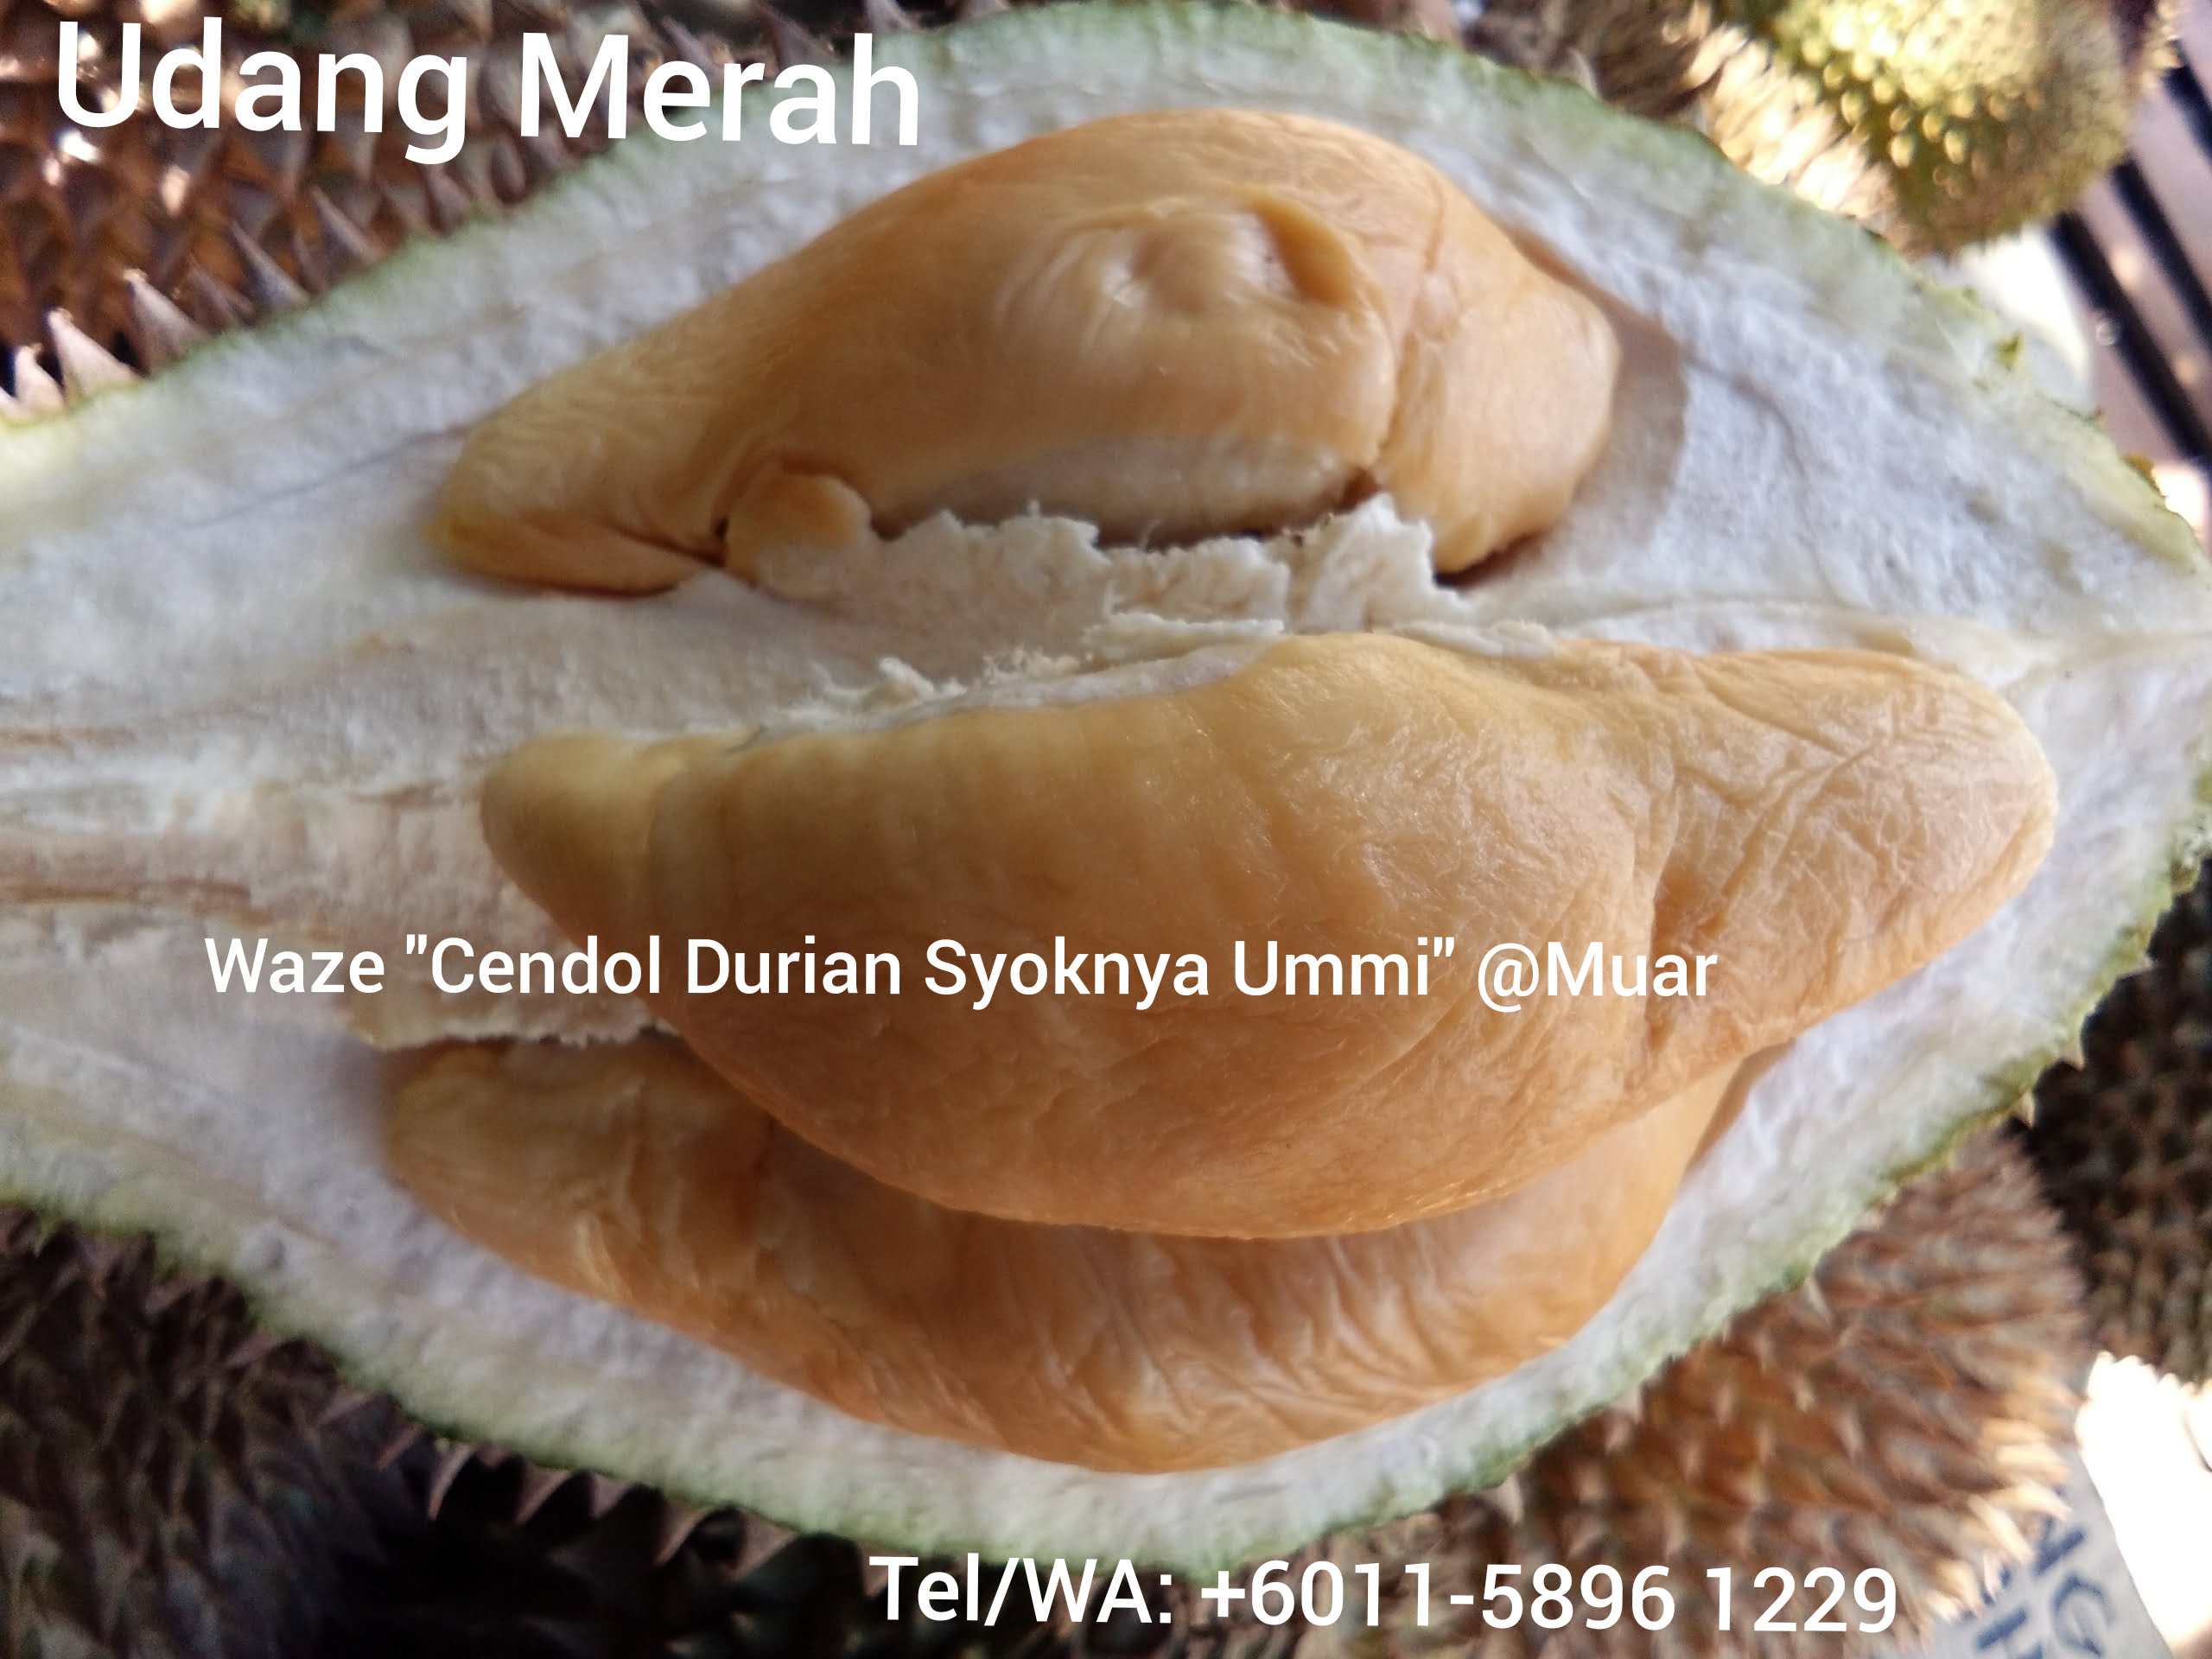 Udang merah durian price